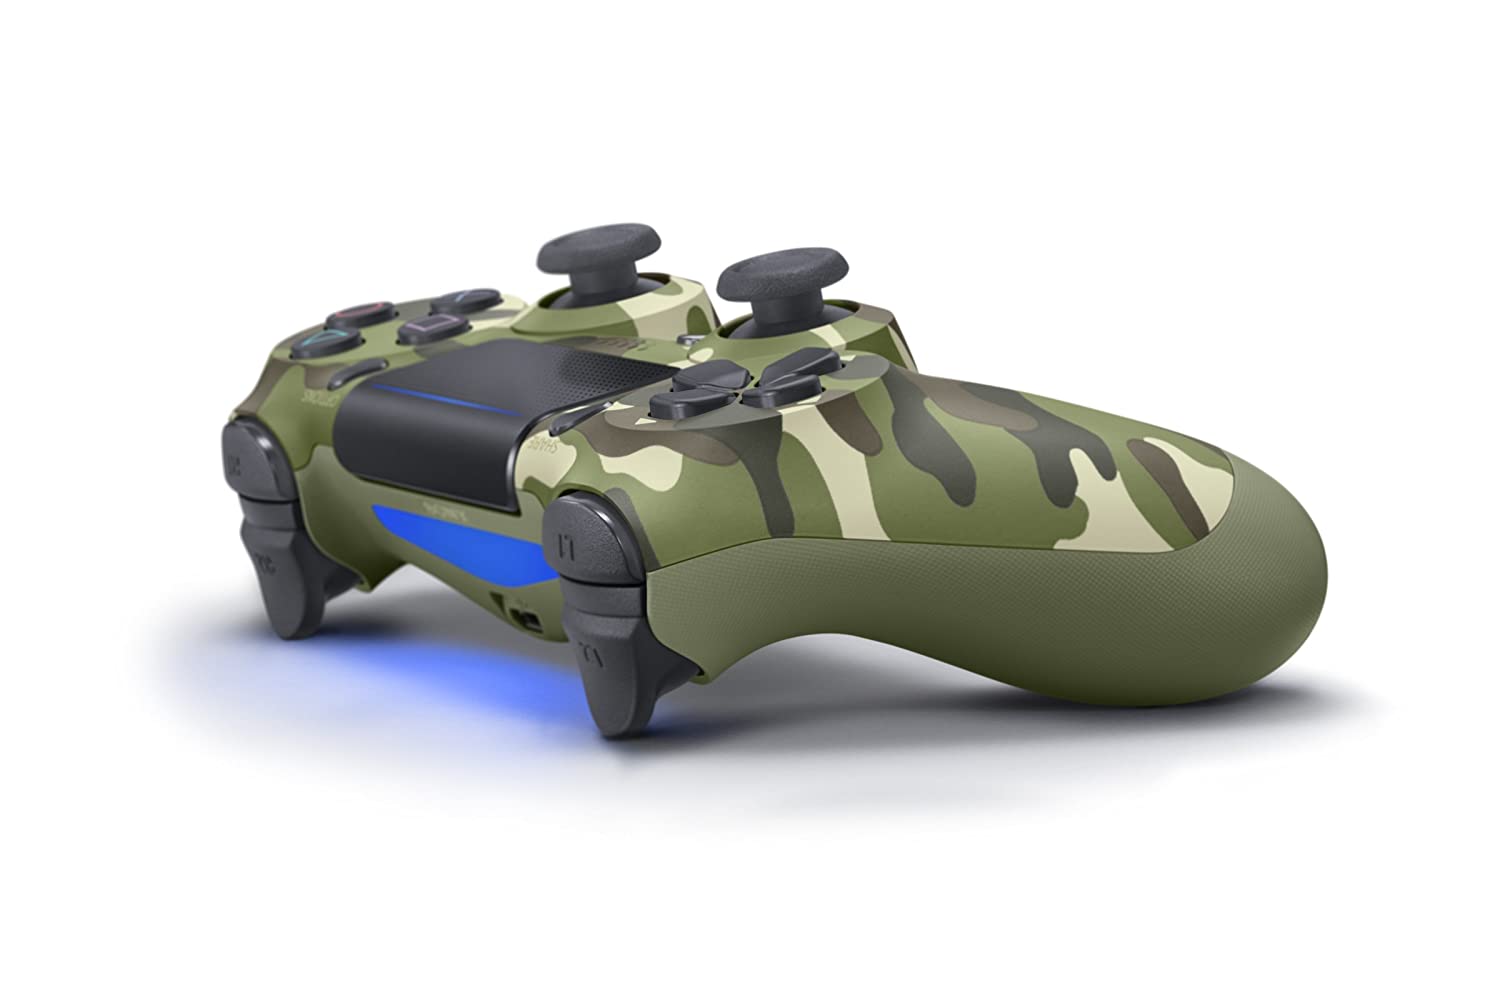 Скриншоты Беспроводной геймпад Sony DualShock 4 V2 Green Camouflage (CUH-ZCT2U)(Зеленый камуфляж) для PS4 интернет-магазин Омегагейм